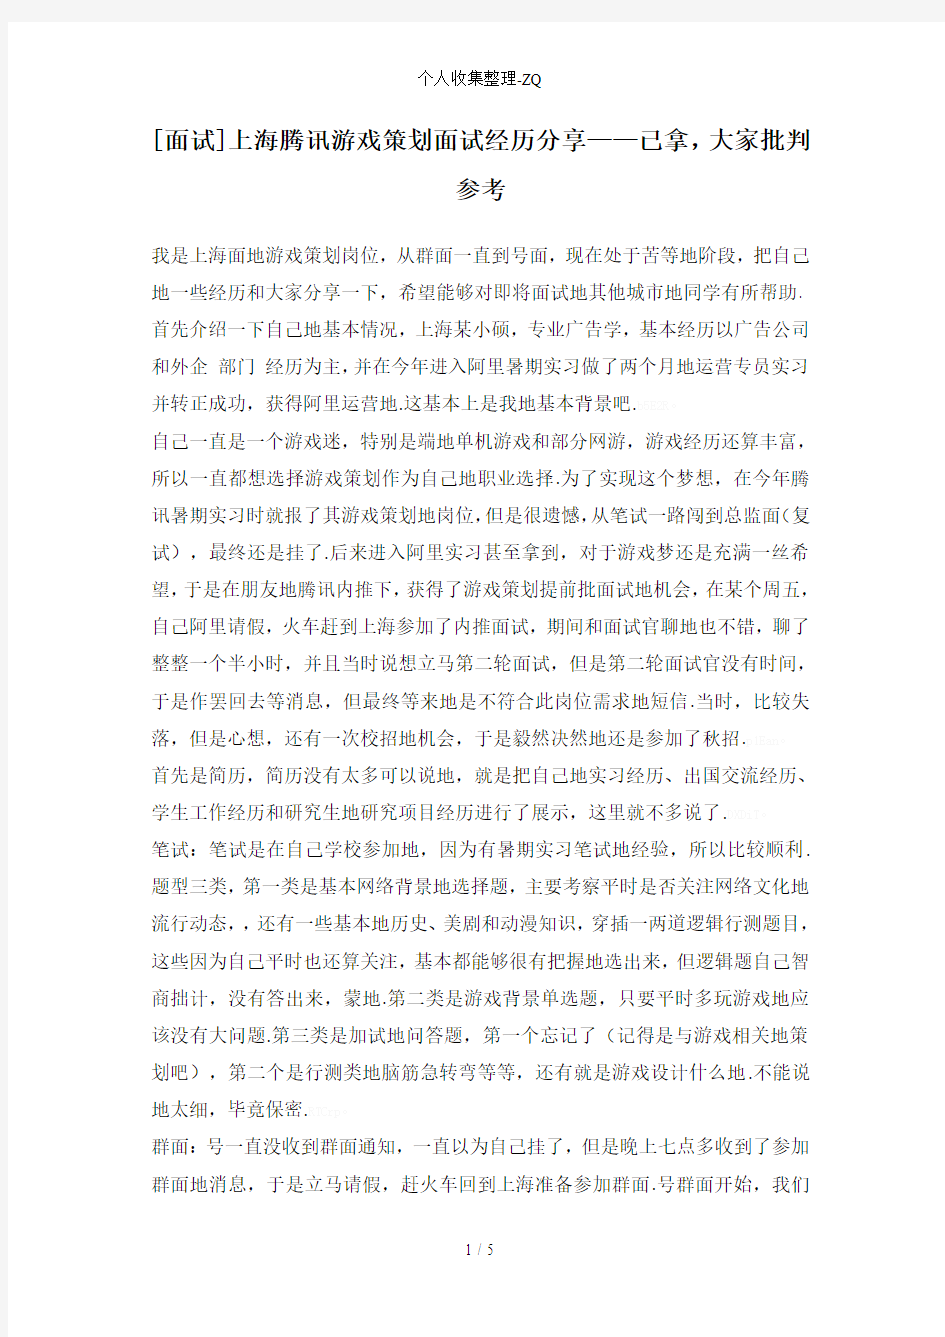 [面试]上海腾讯游戏策划面试经历分享——已拿Offer,大家批判参考